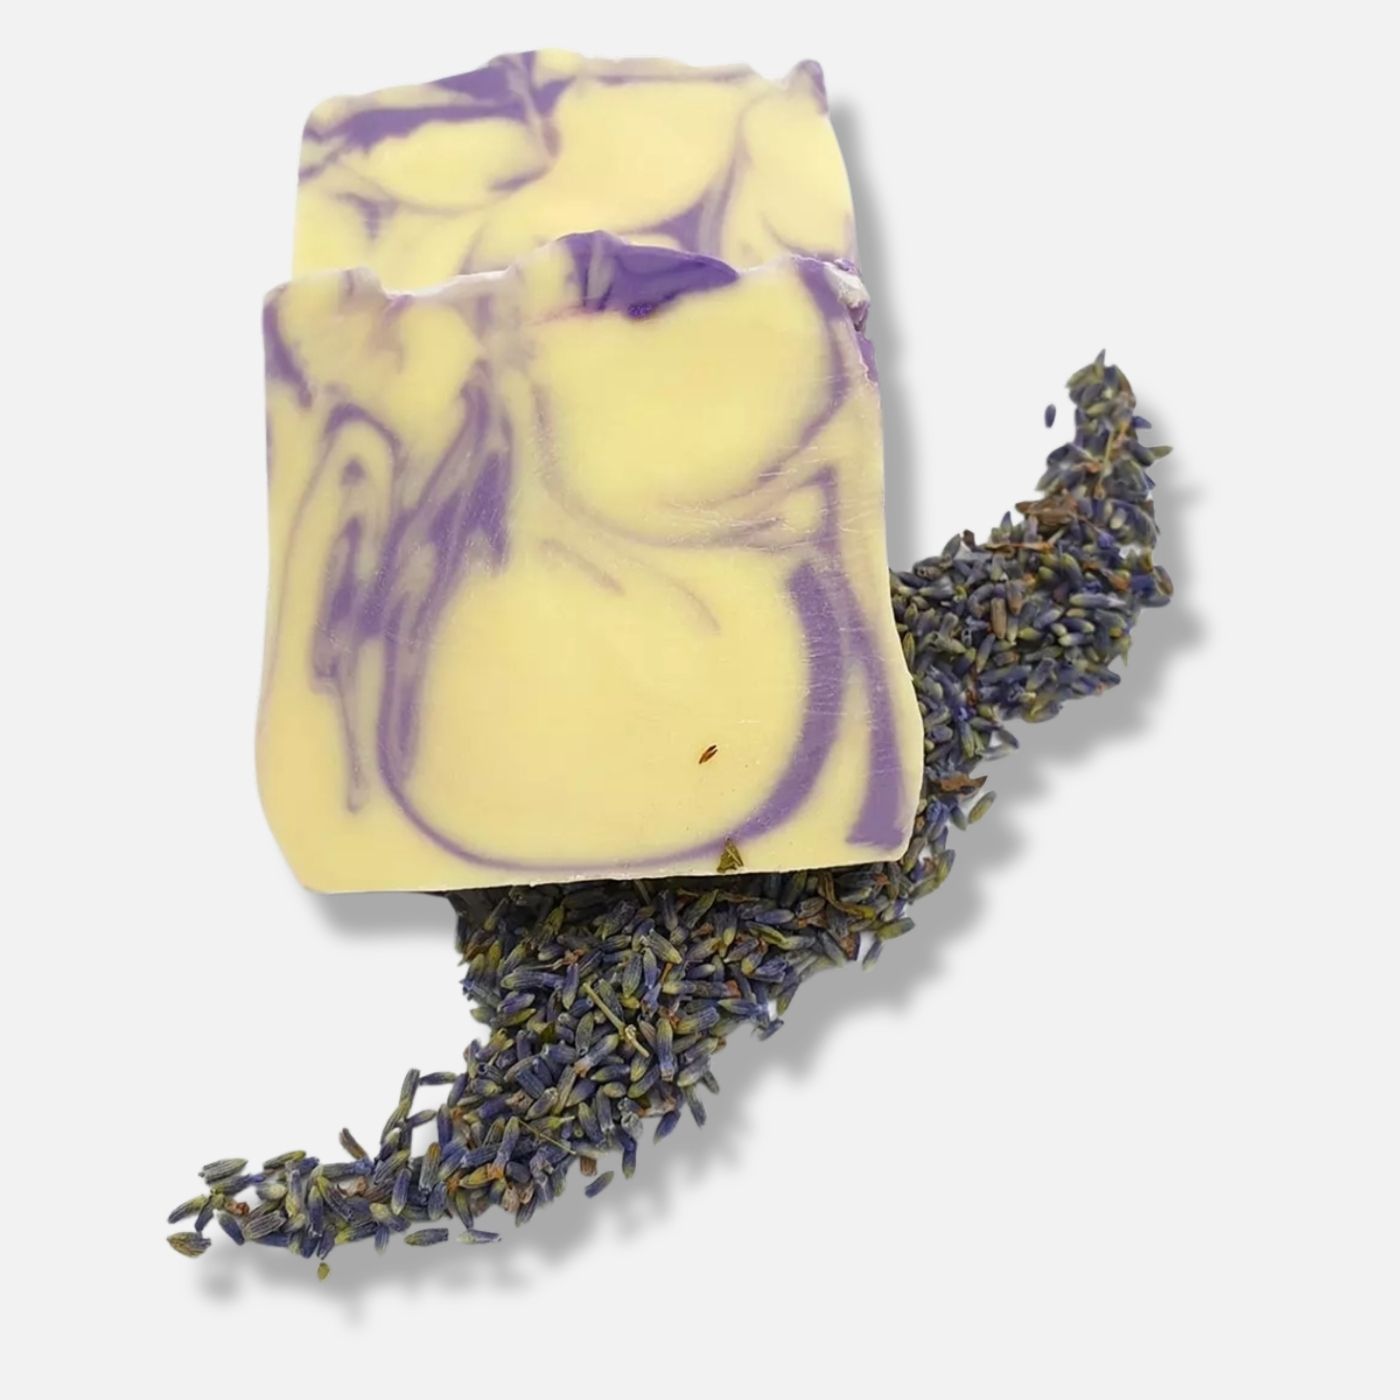 Vegane Naturkosmetik Seife für die anspruchsvolle Gesichtshaut - Lavendel Sole Gesichtsseife